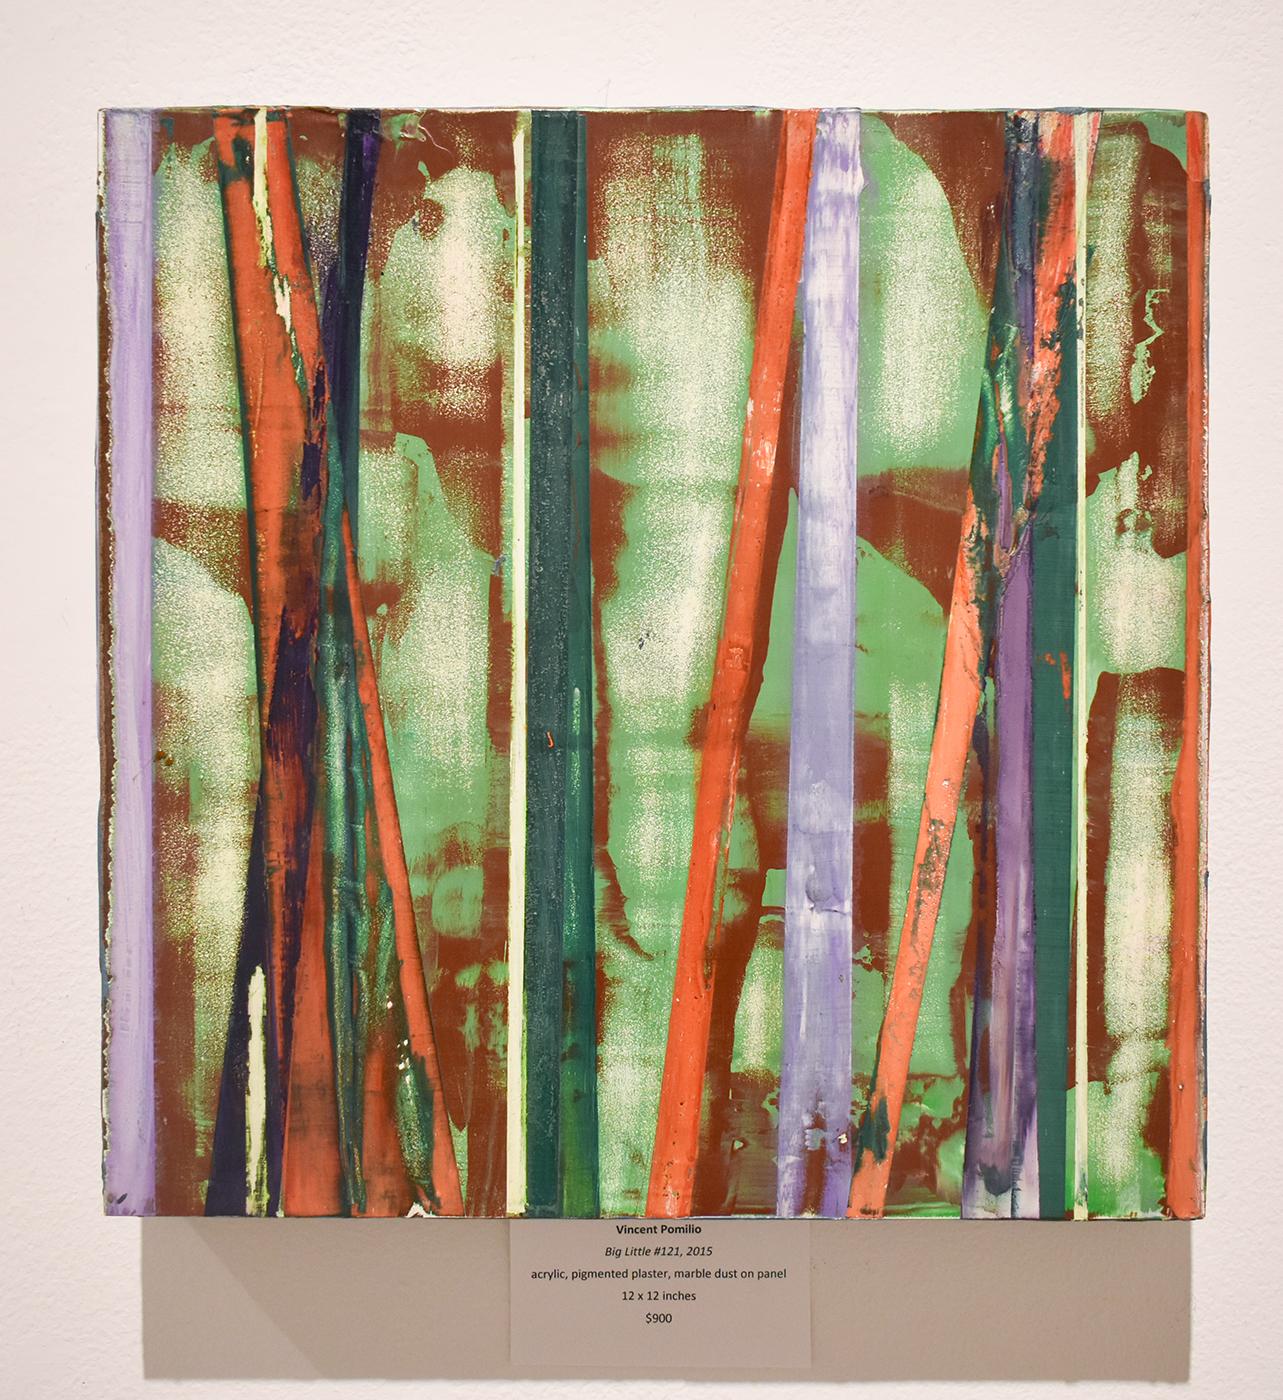 Big Little 121 (Mehrfarbiges, mehrlagiges, abstraktes, geometrisches Gemälde in Mischtechnik) (Abstrakt), Mixed Media Art, von Vincent Pomilio